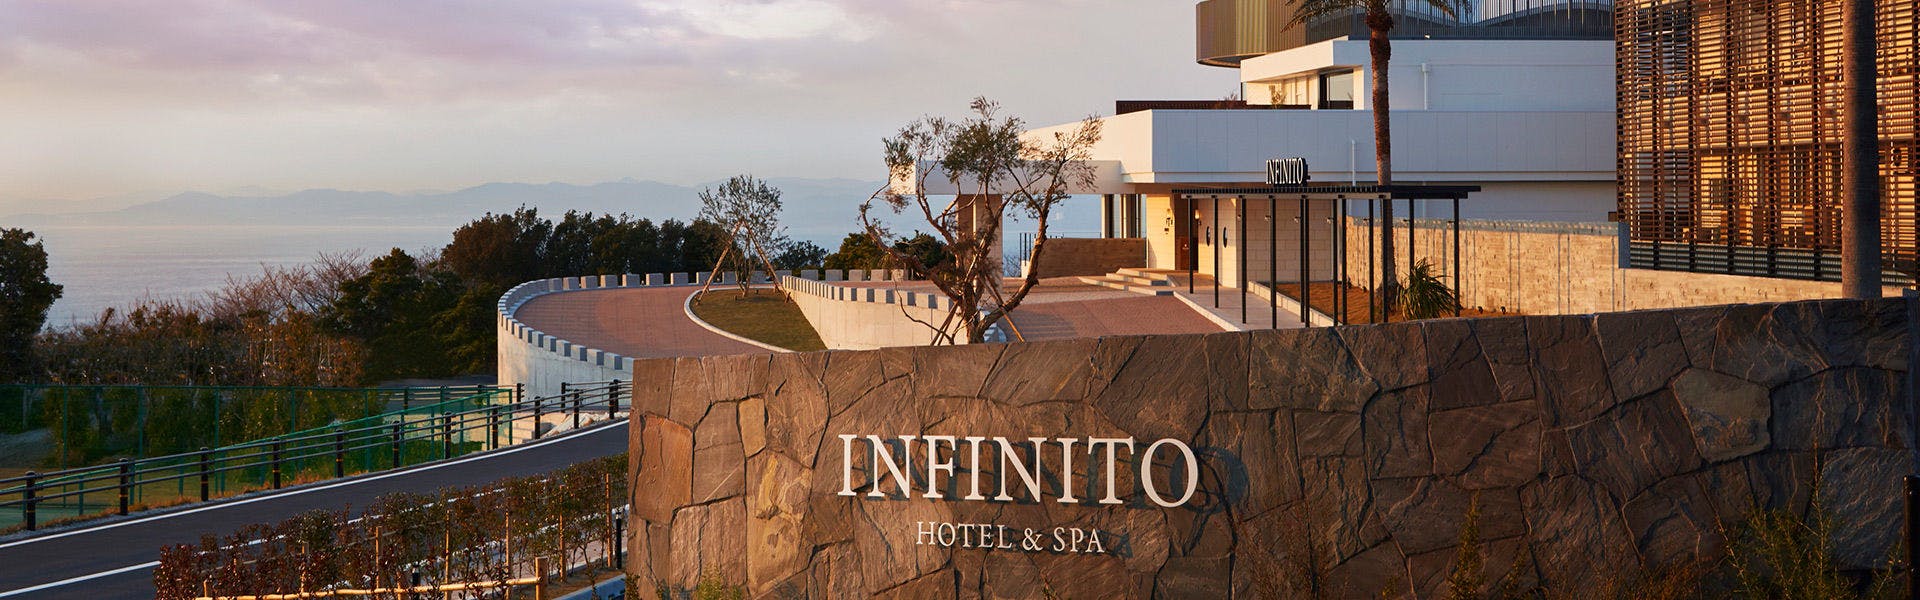 記念日におすすめのホテル・INFINITO HOTEL&SPA 南紀白浜の写真1